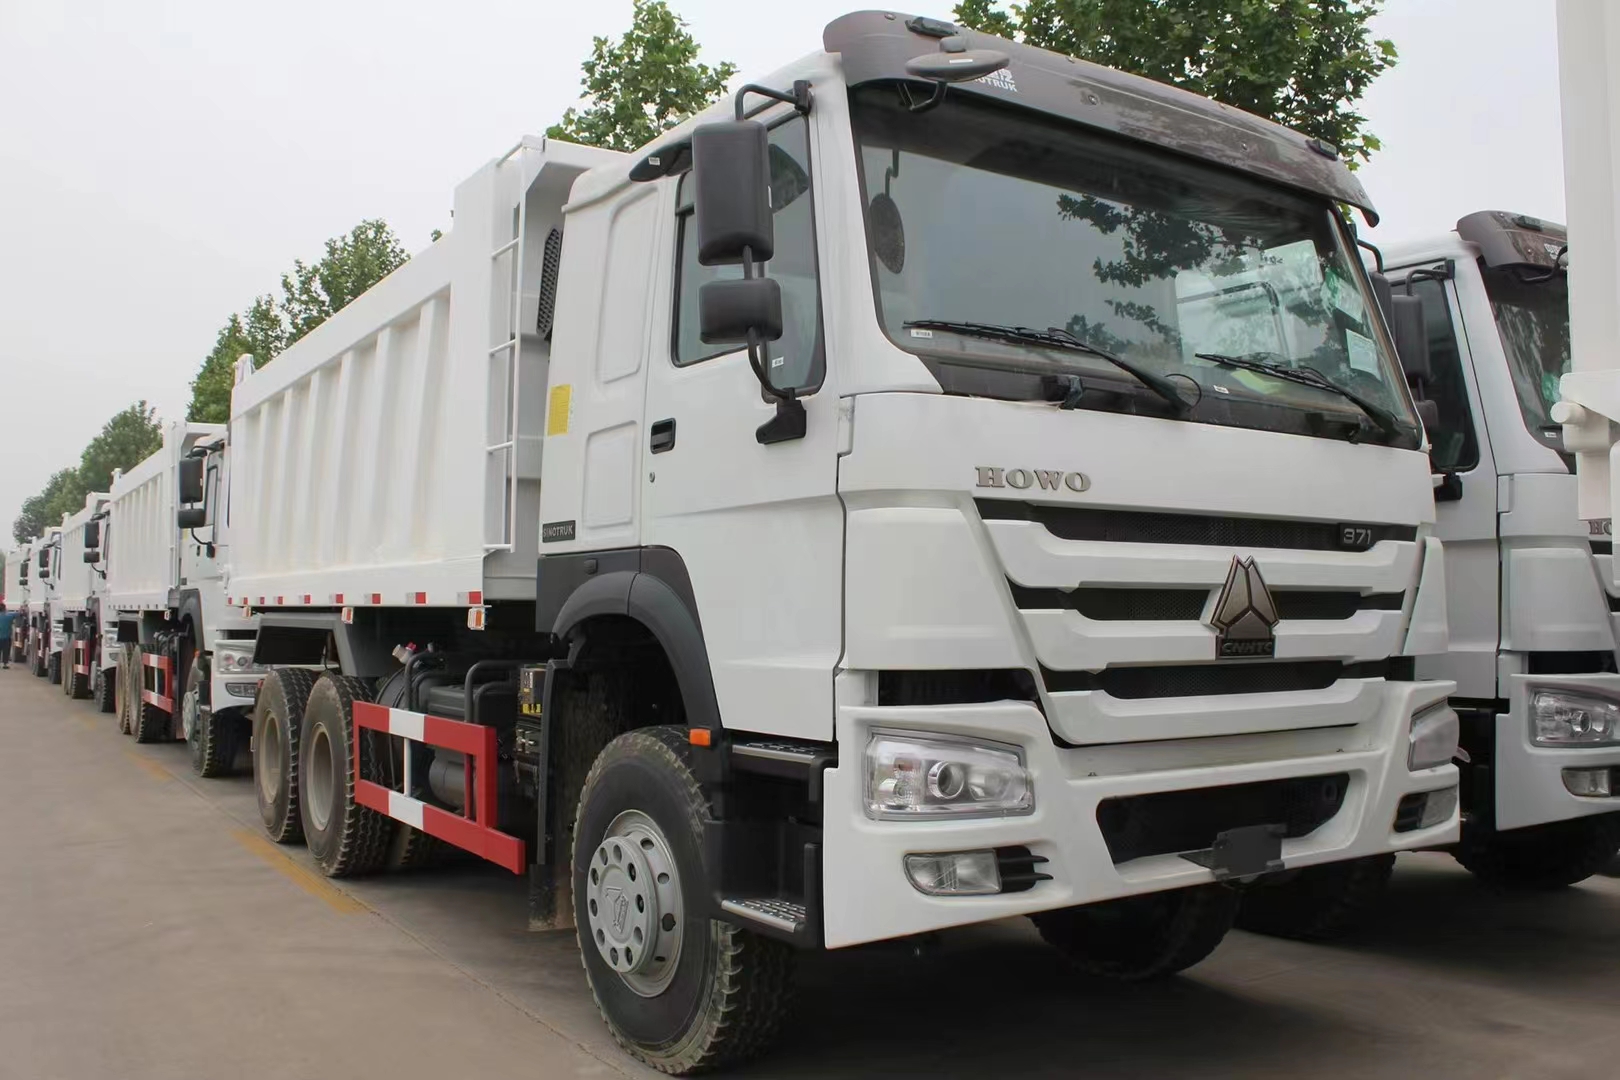 Sinotruk Howo dump trucks are ready for shipment